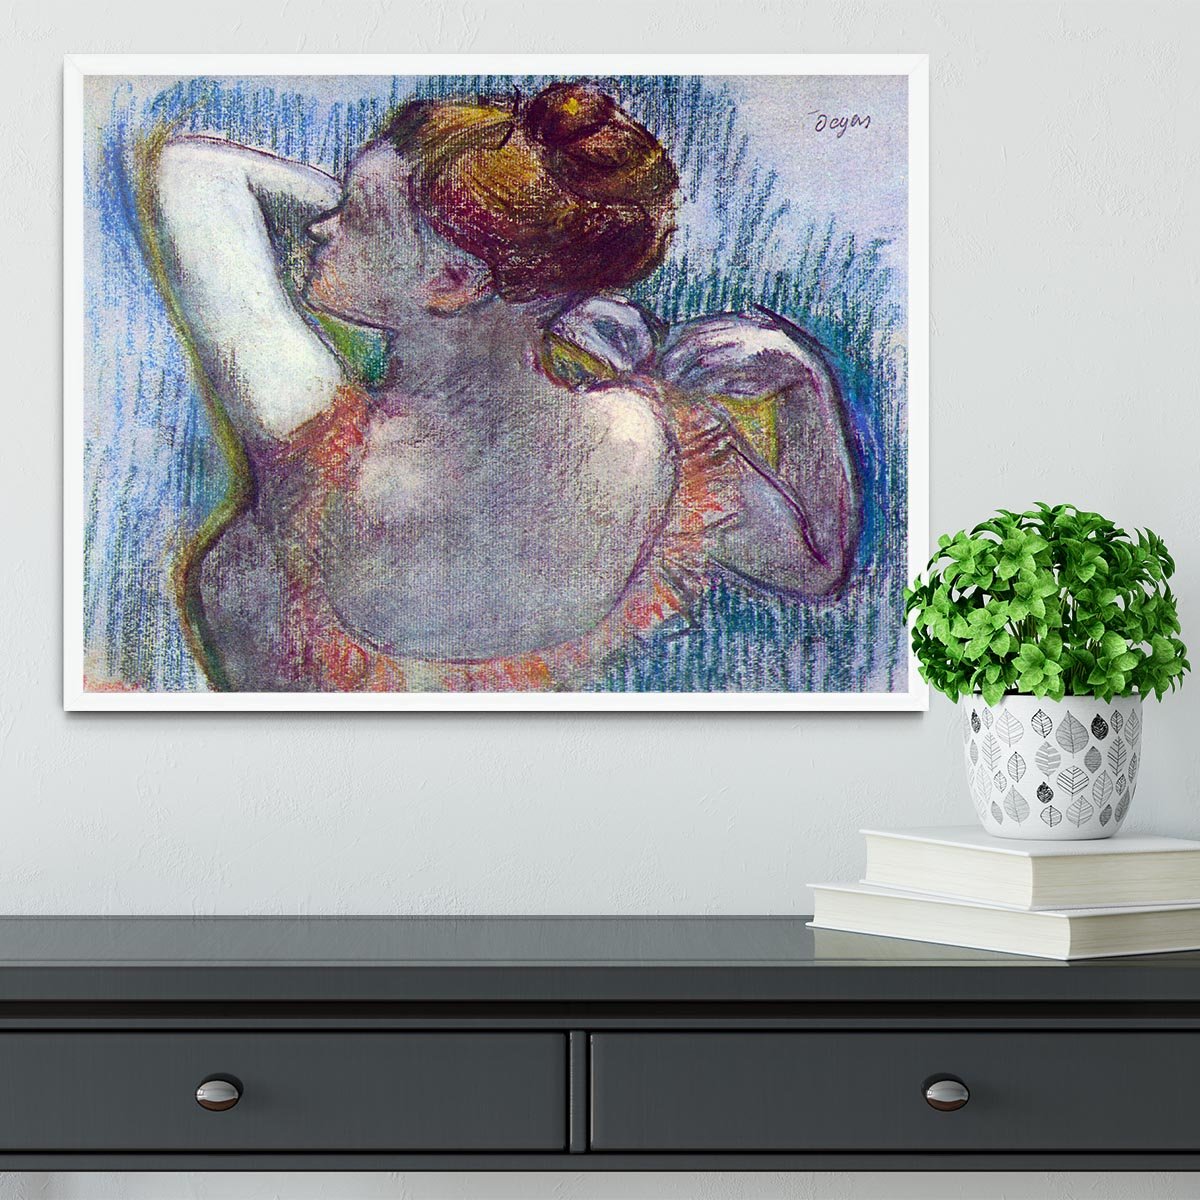 Dancer by Degas Framed Print - Canvas Art Rocks -6